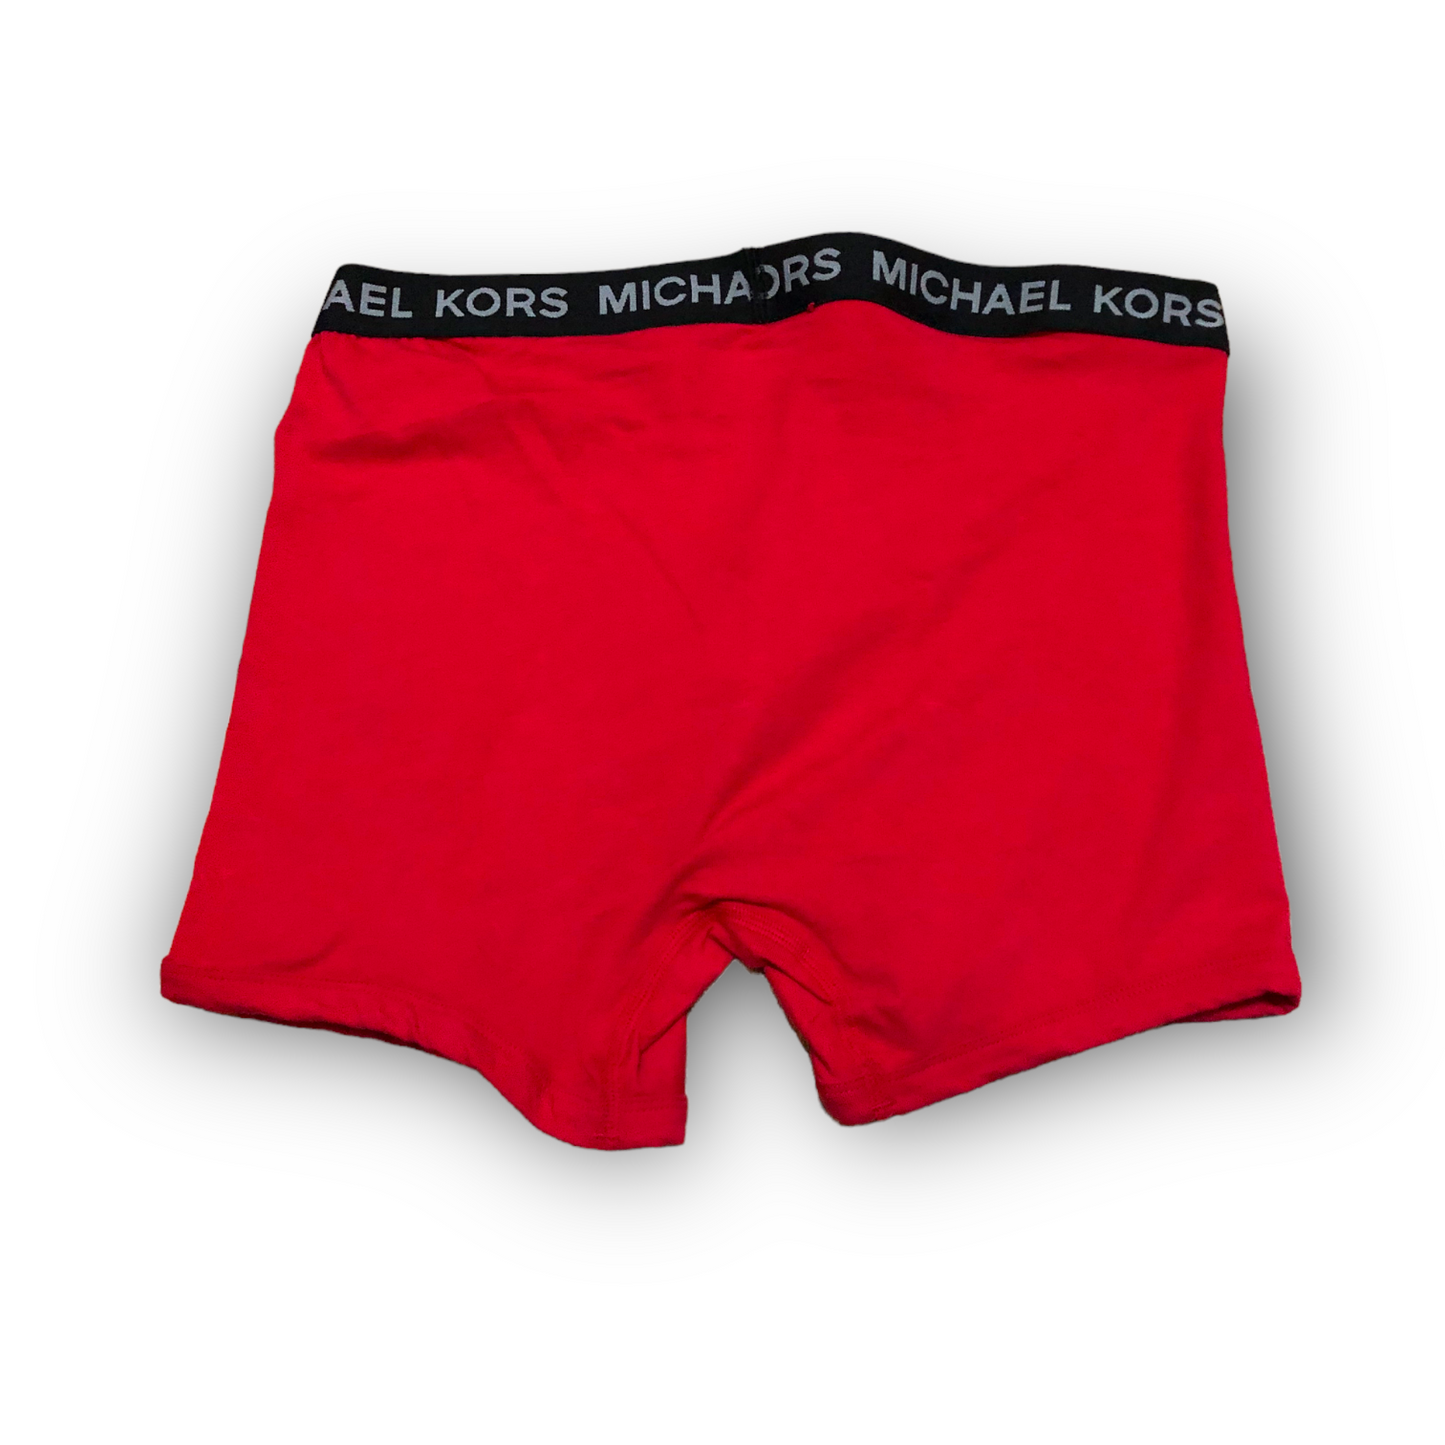 Michael Kors Men's Cotton Boxer Briefs (NWOT)